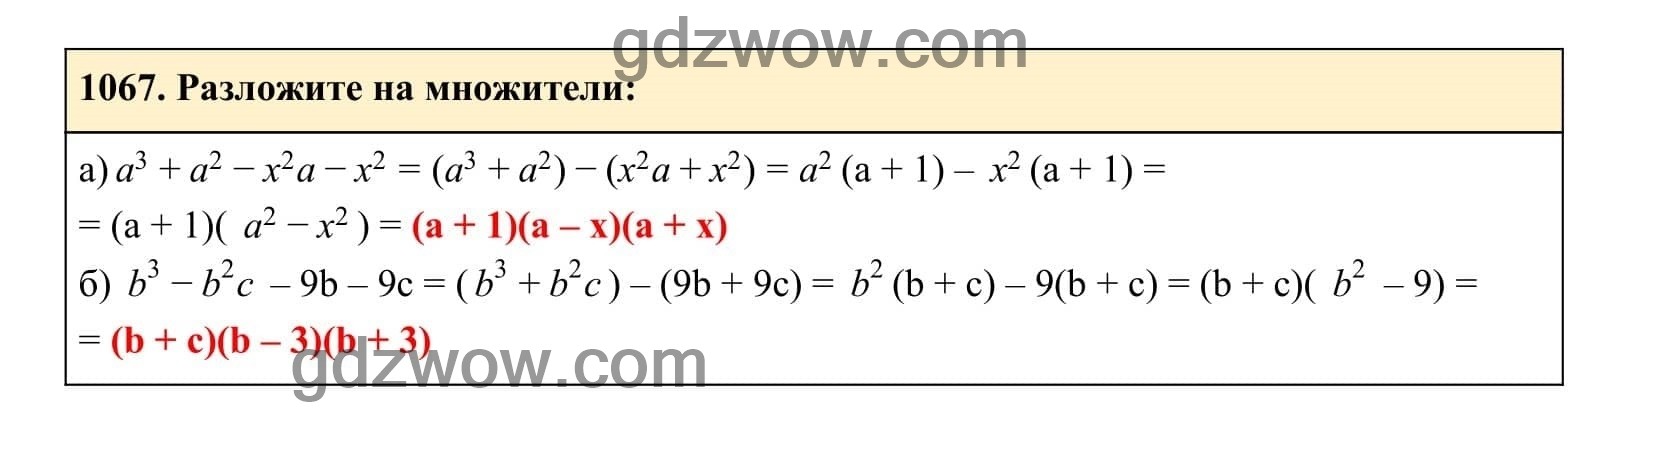 Упражнение 1067 - ГДЗ по Алгебре 7 класс Учебник Макарычев (решебник) - GDZwow